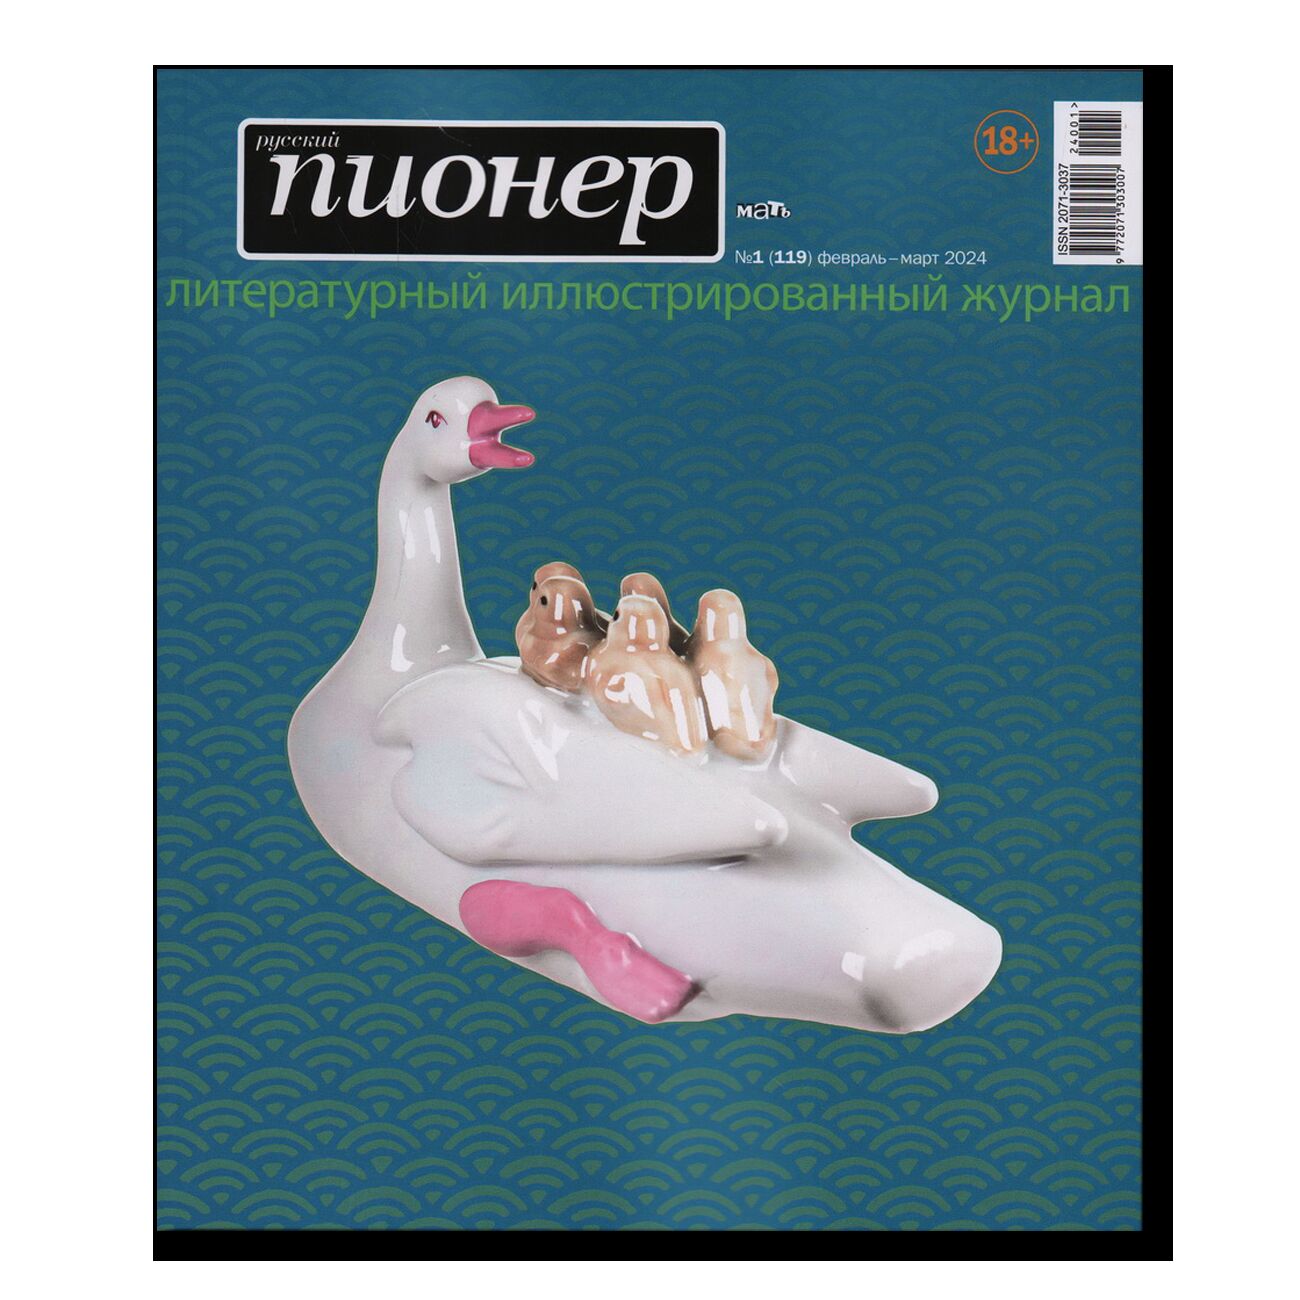 Журнал "Русский пионер" № 1 (119)